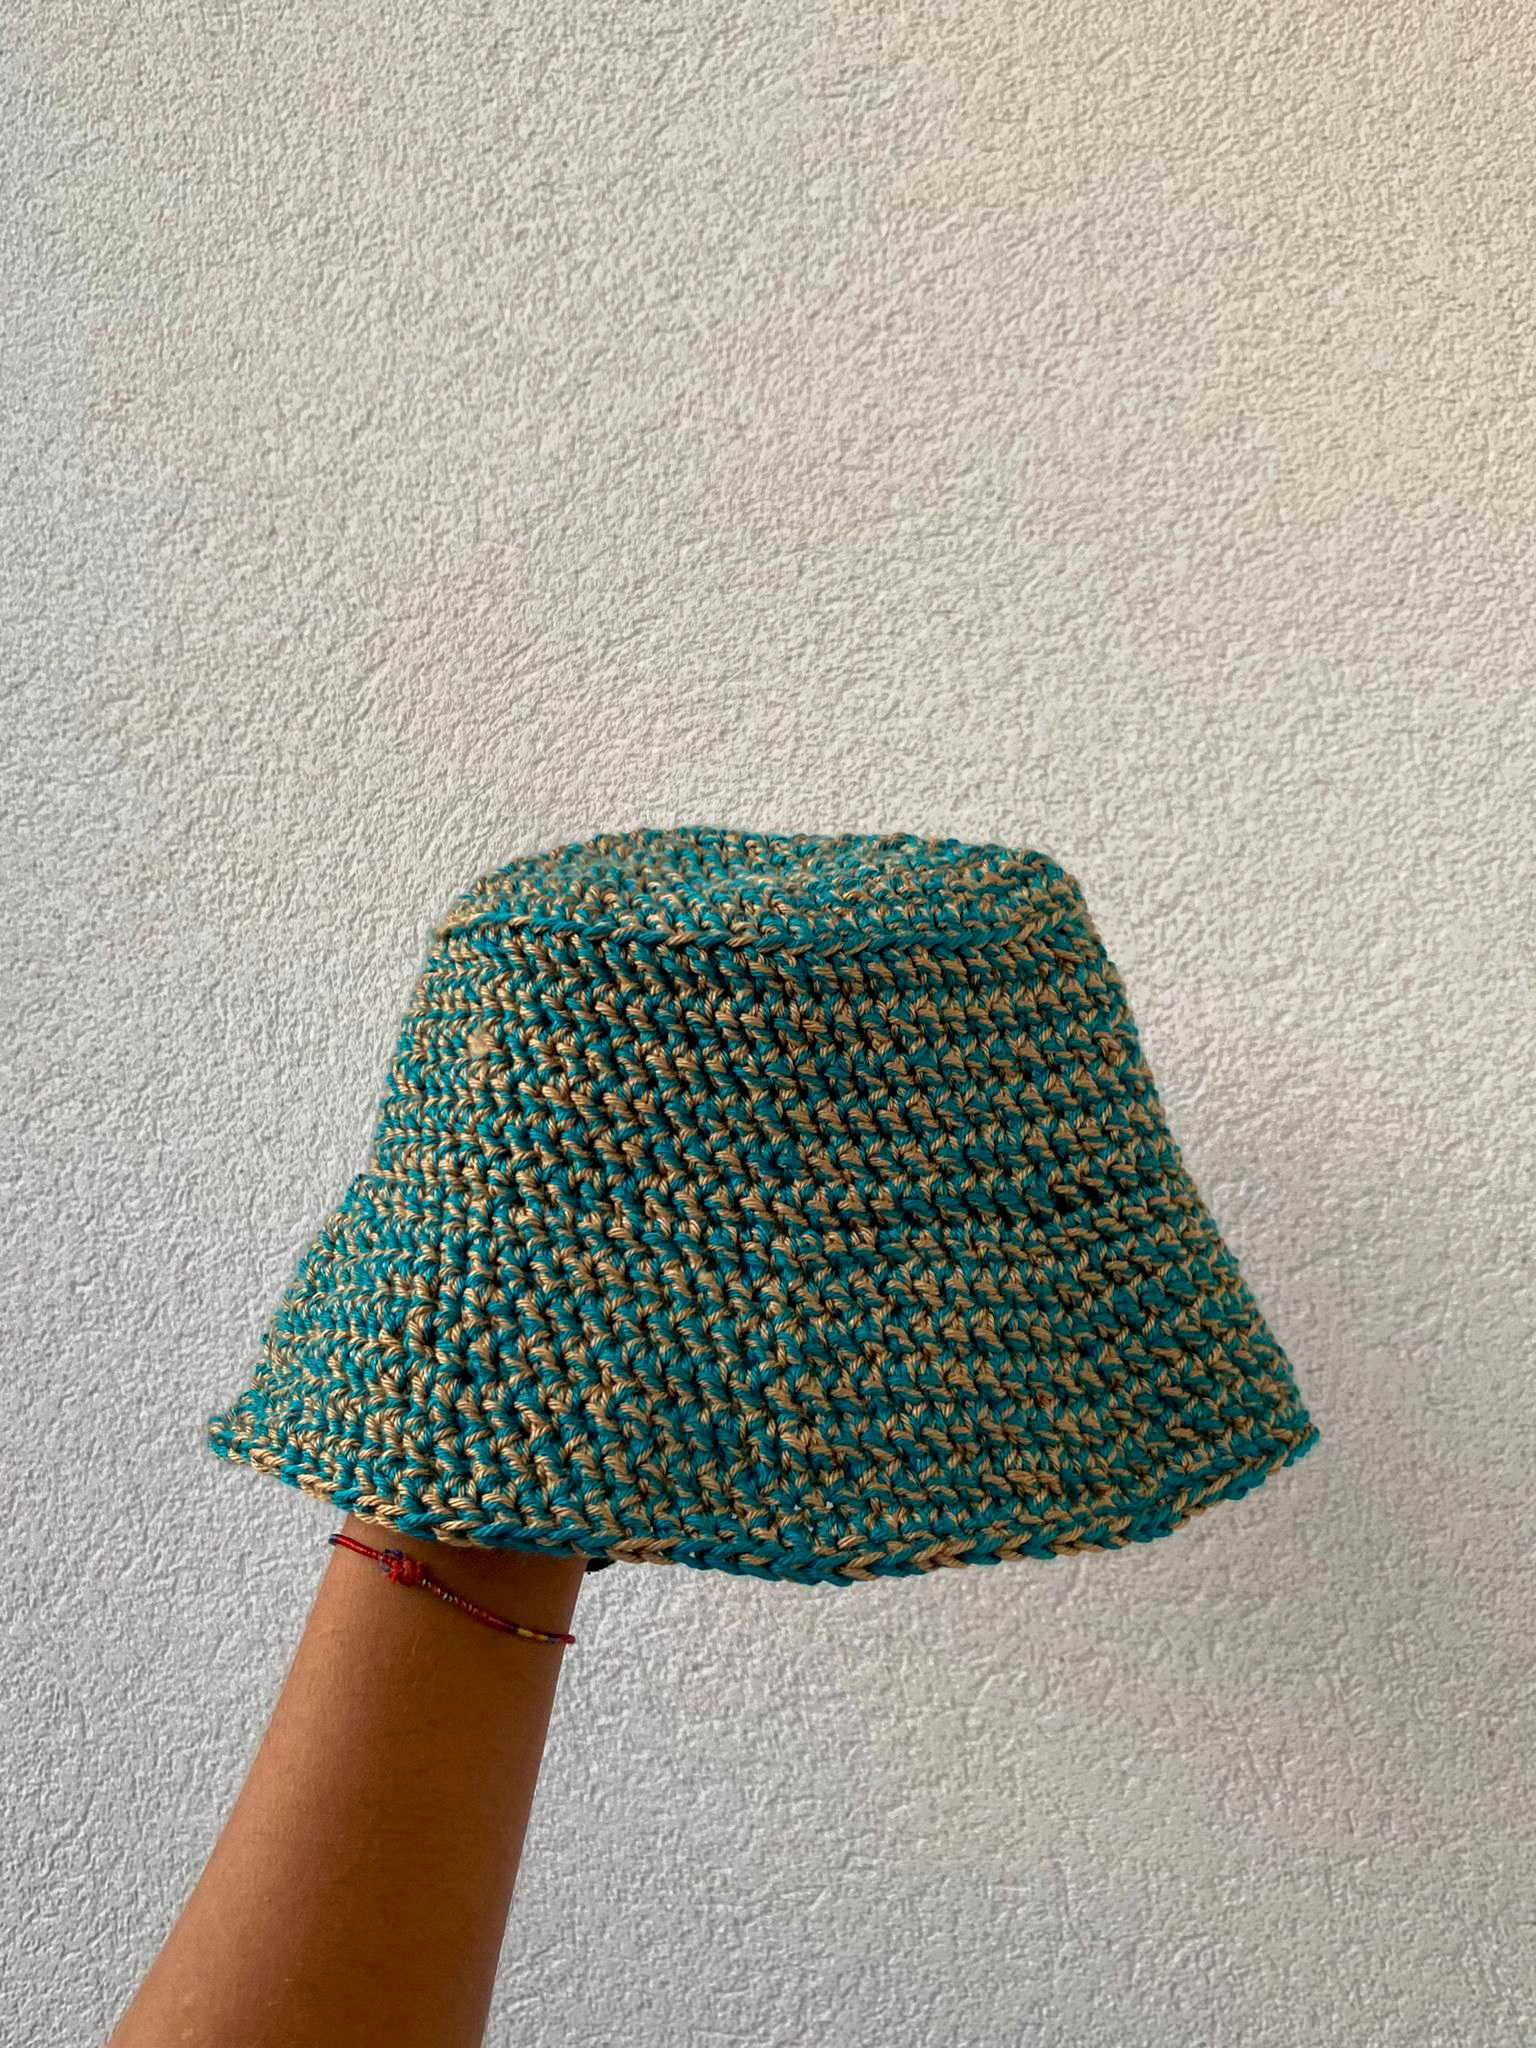 Chapéus bucket hat em crochet feitos à mão